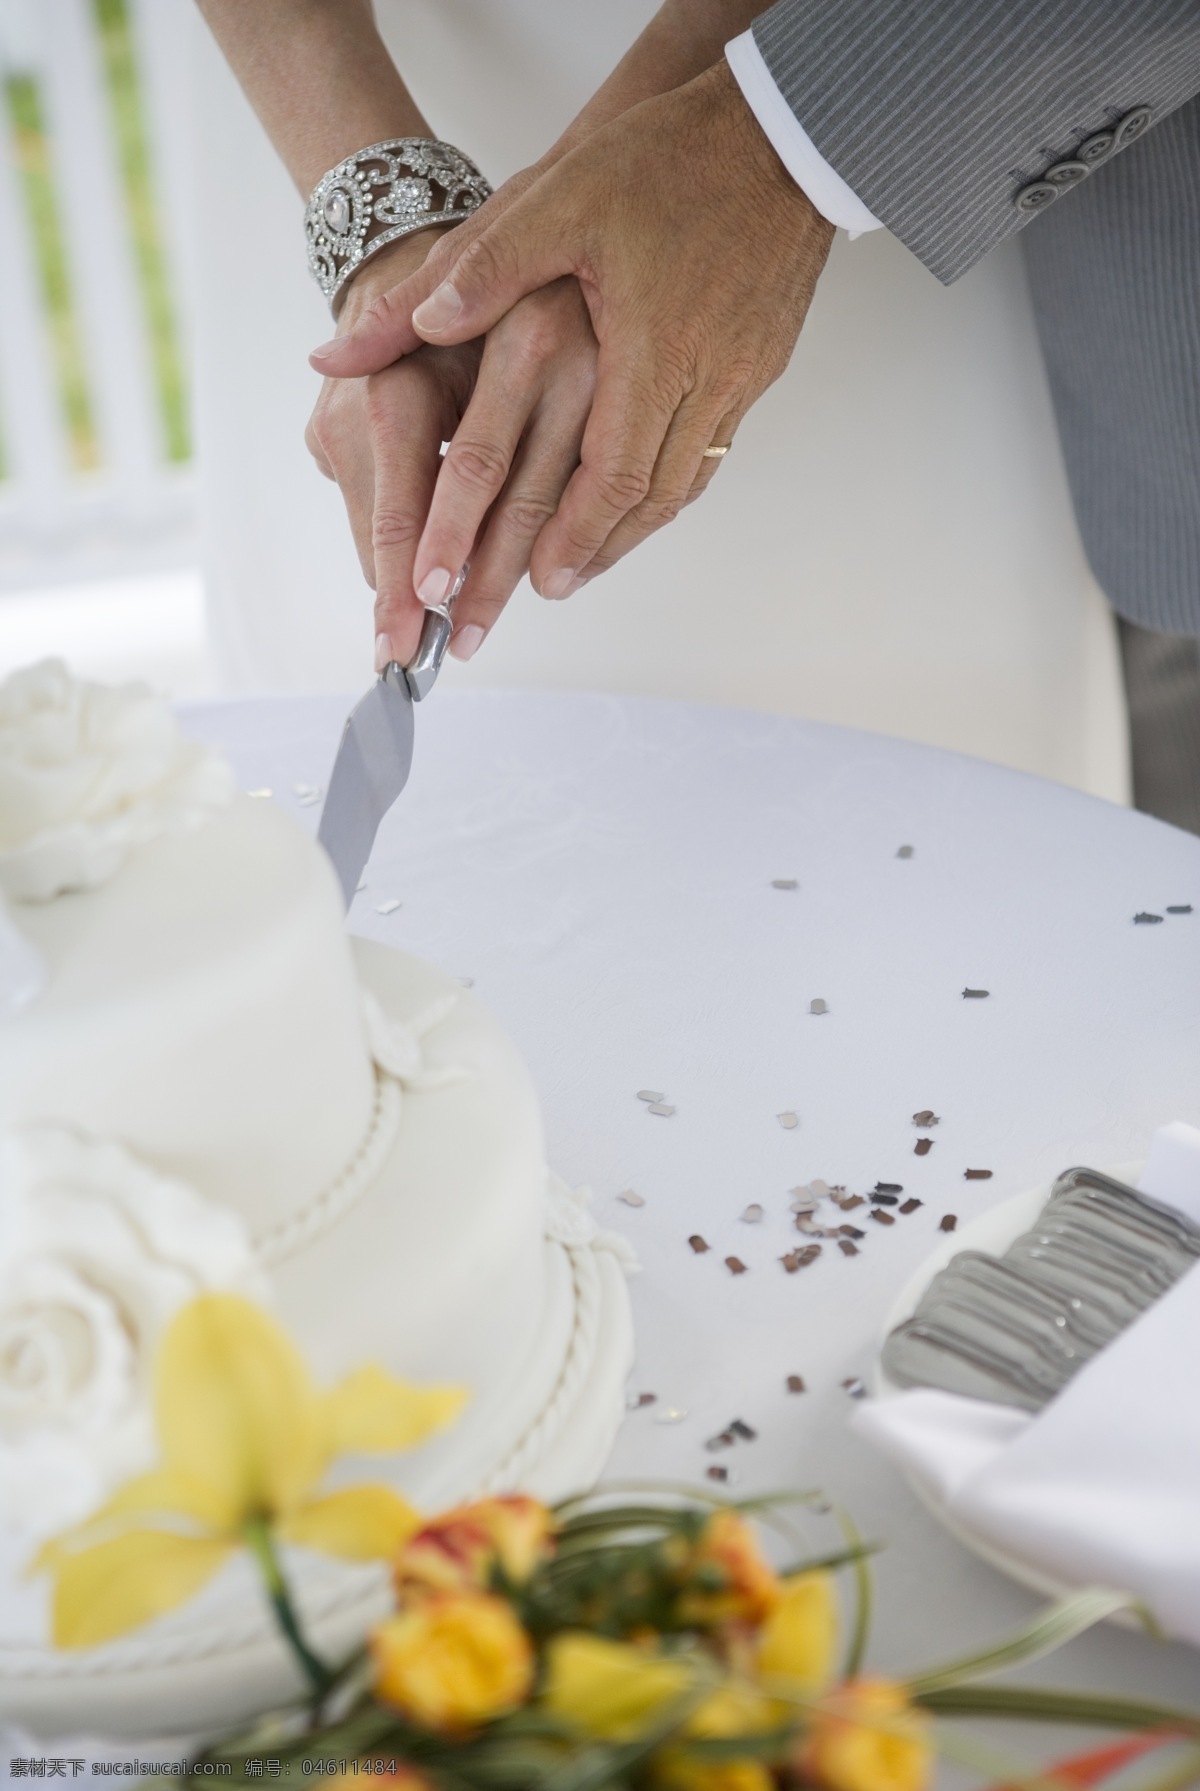 切 蛋糕 夫妻 婚礼蛋糕 生活人物摄影 情侣图片 人物图片